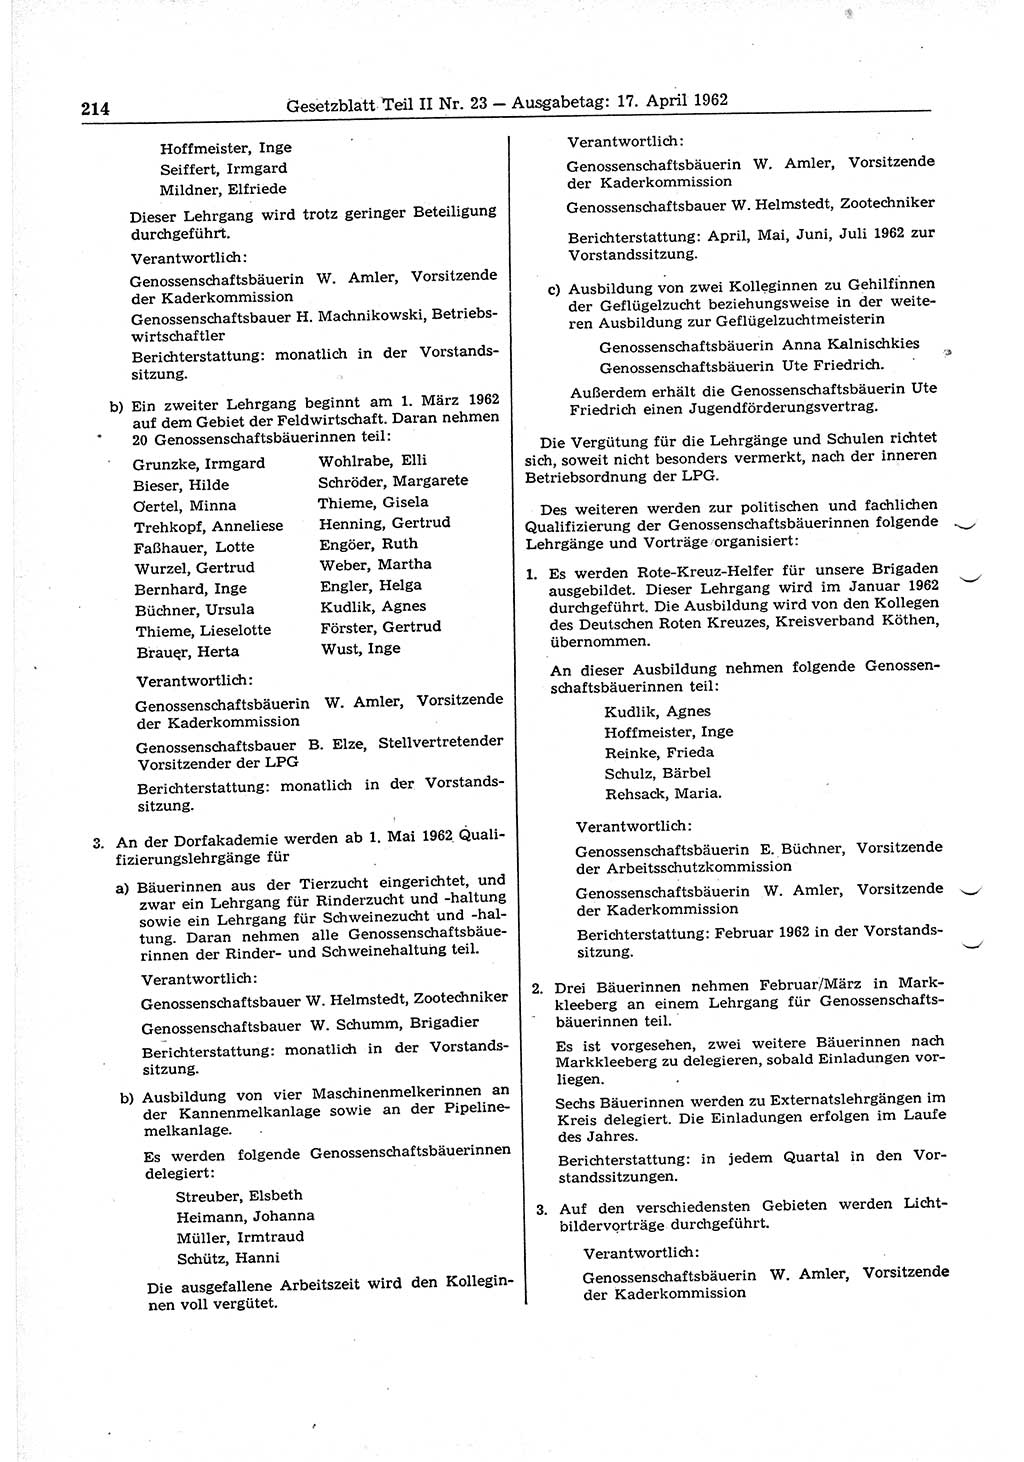 Gesetzblatt (GBl.) der Deutschen Demokratischen Republik (DDR) Teil ⅠⅠ 1962, Seite 214 (GBl. DDR ⅠⅠ 1962, S. 214)